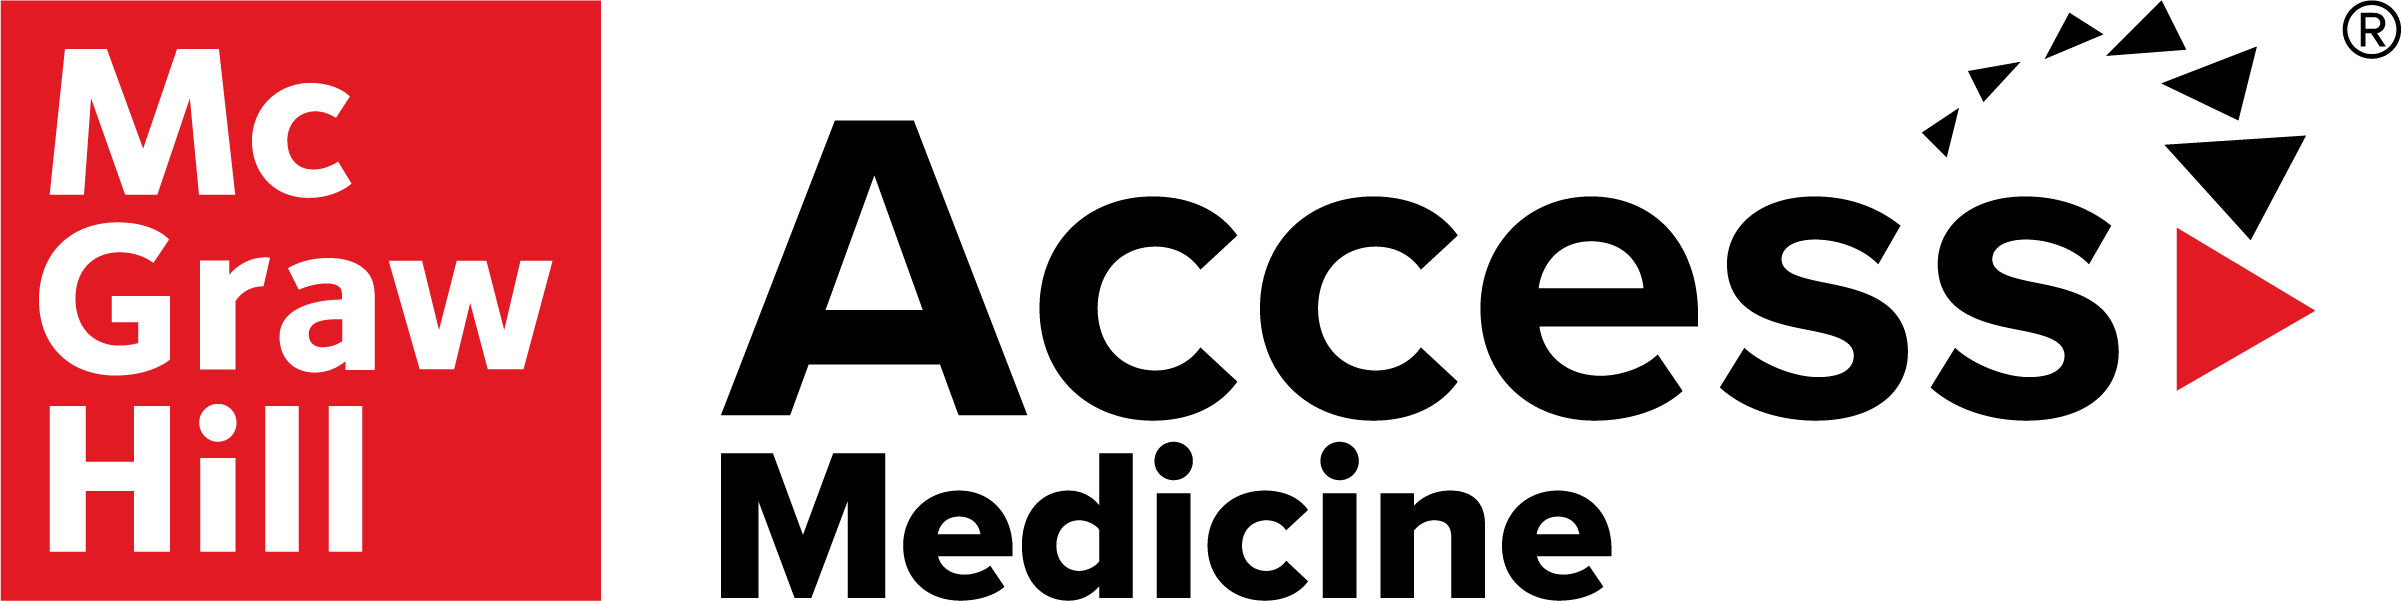 Platform_Logo